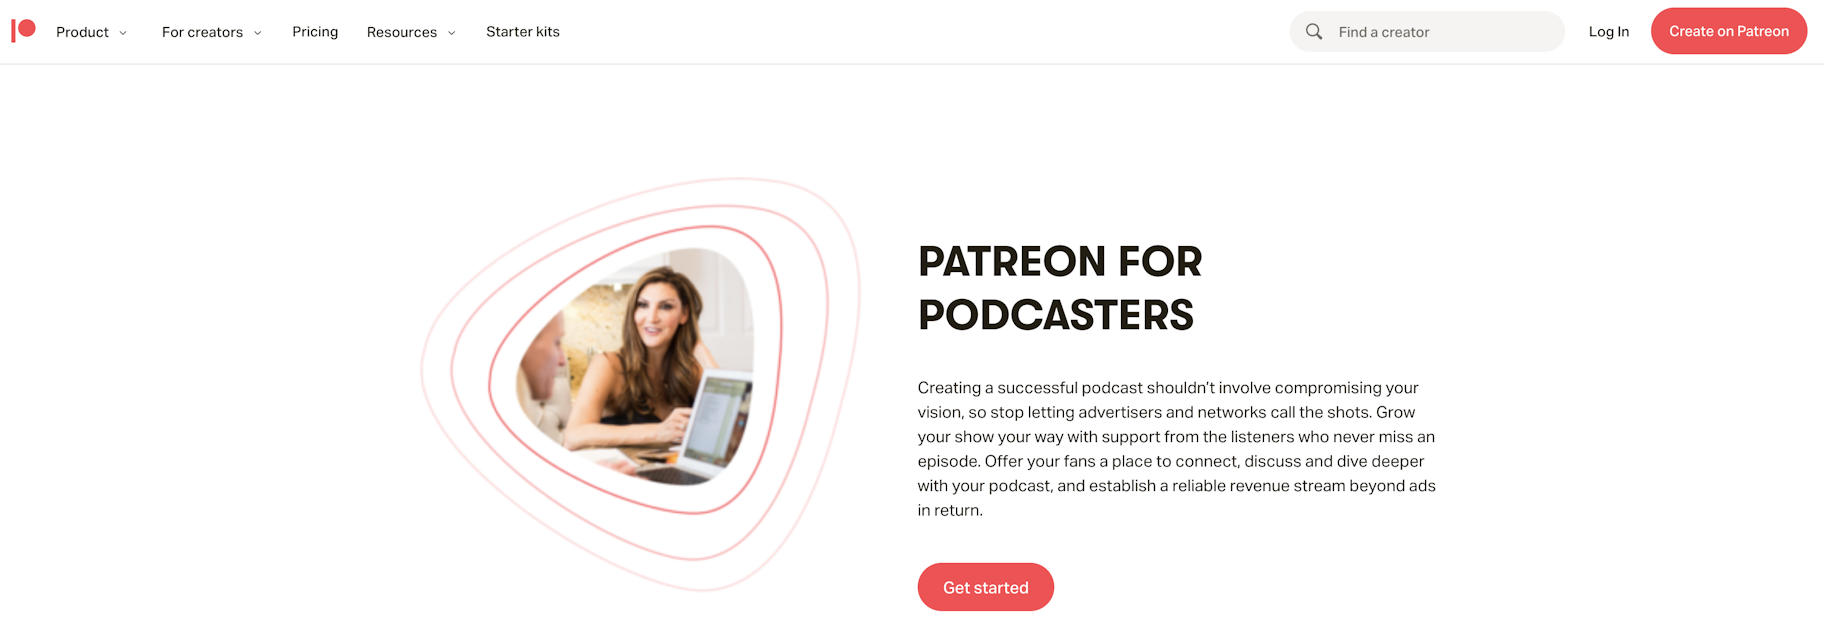 Podcast-Angebot gestaffeltes Patreon-Abonnement